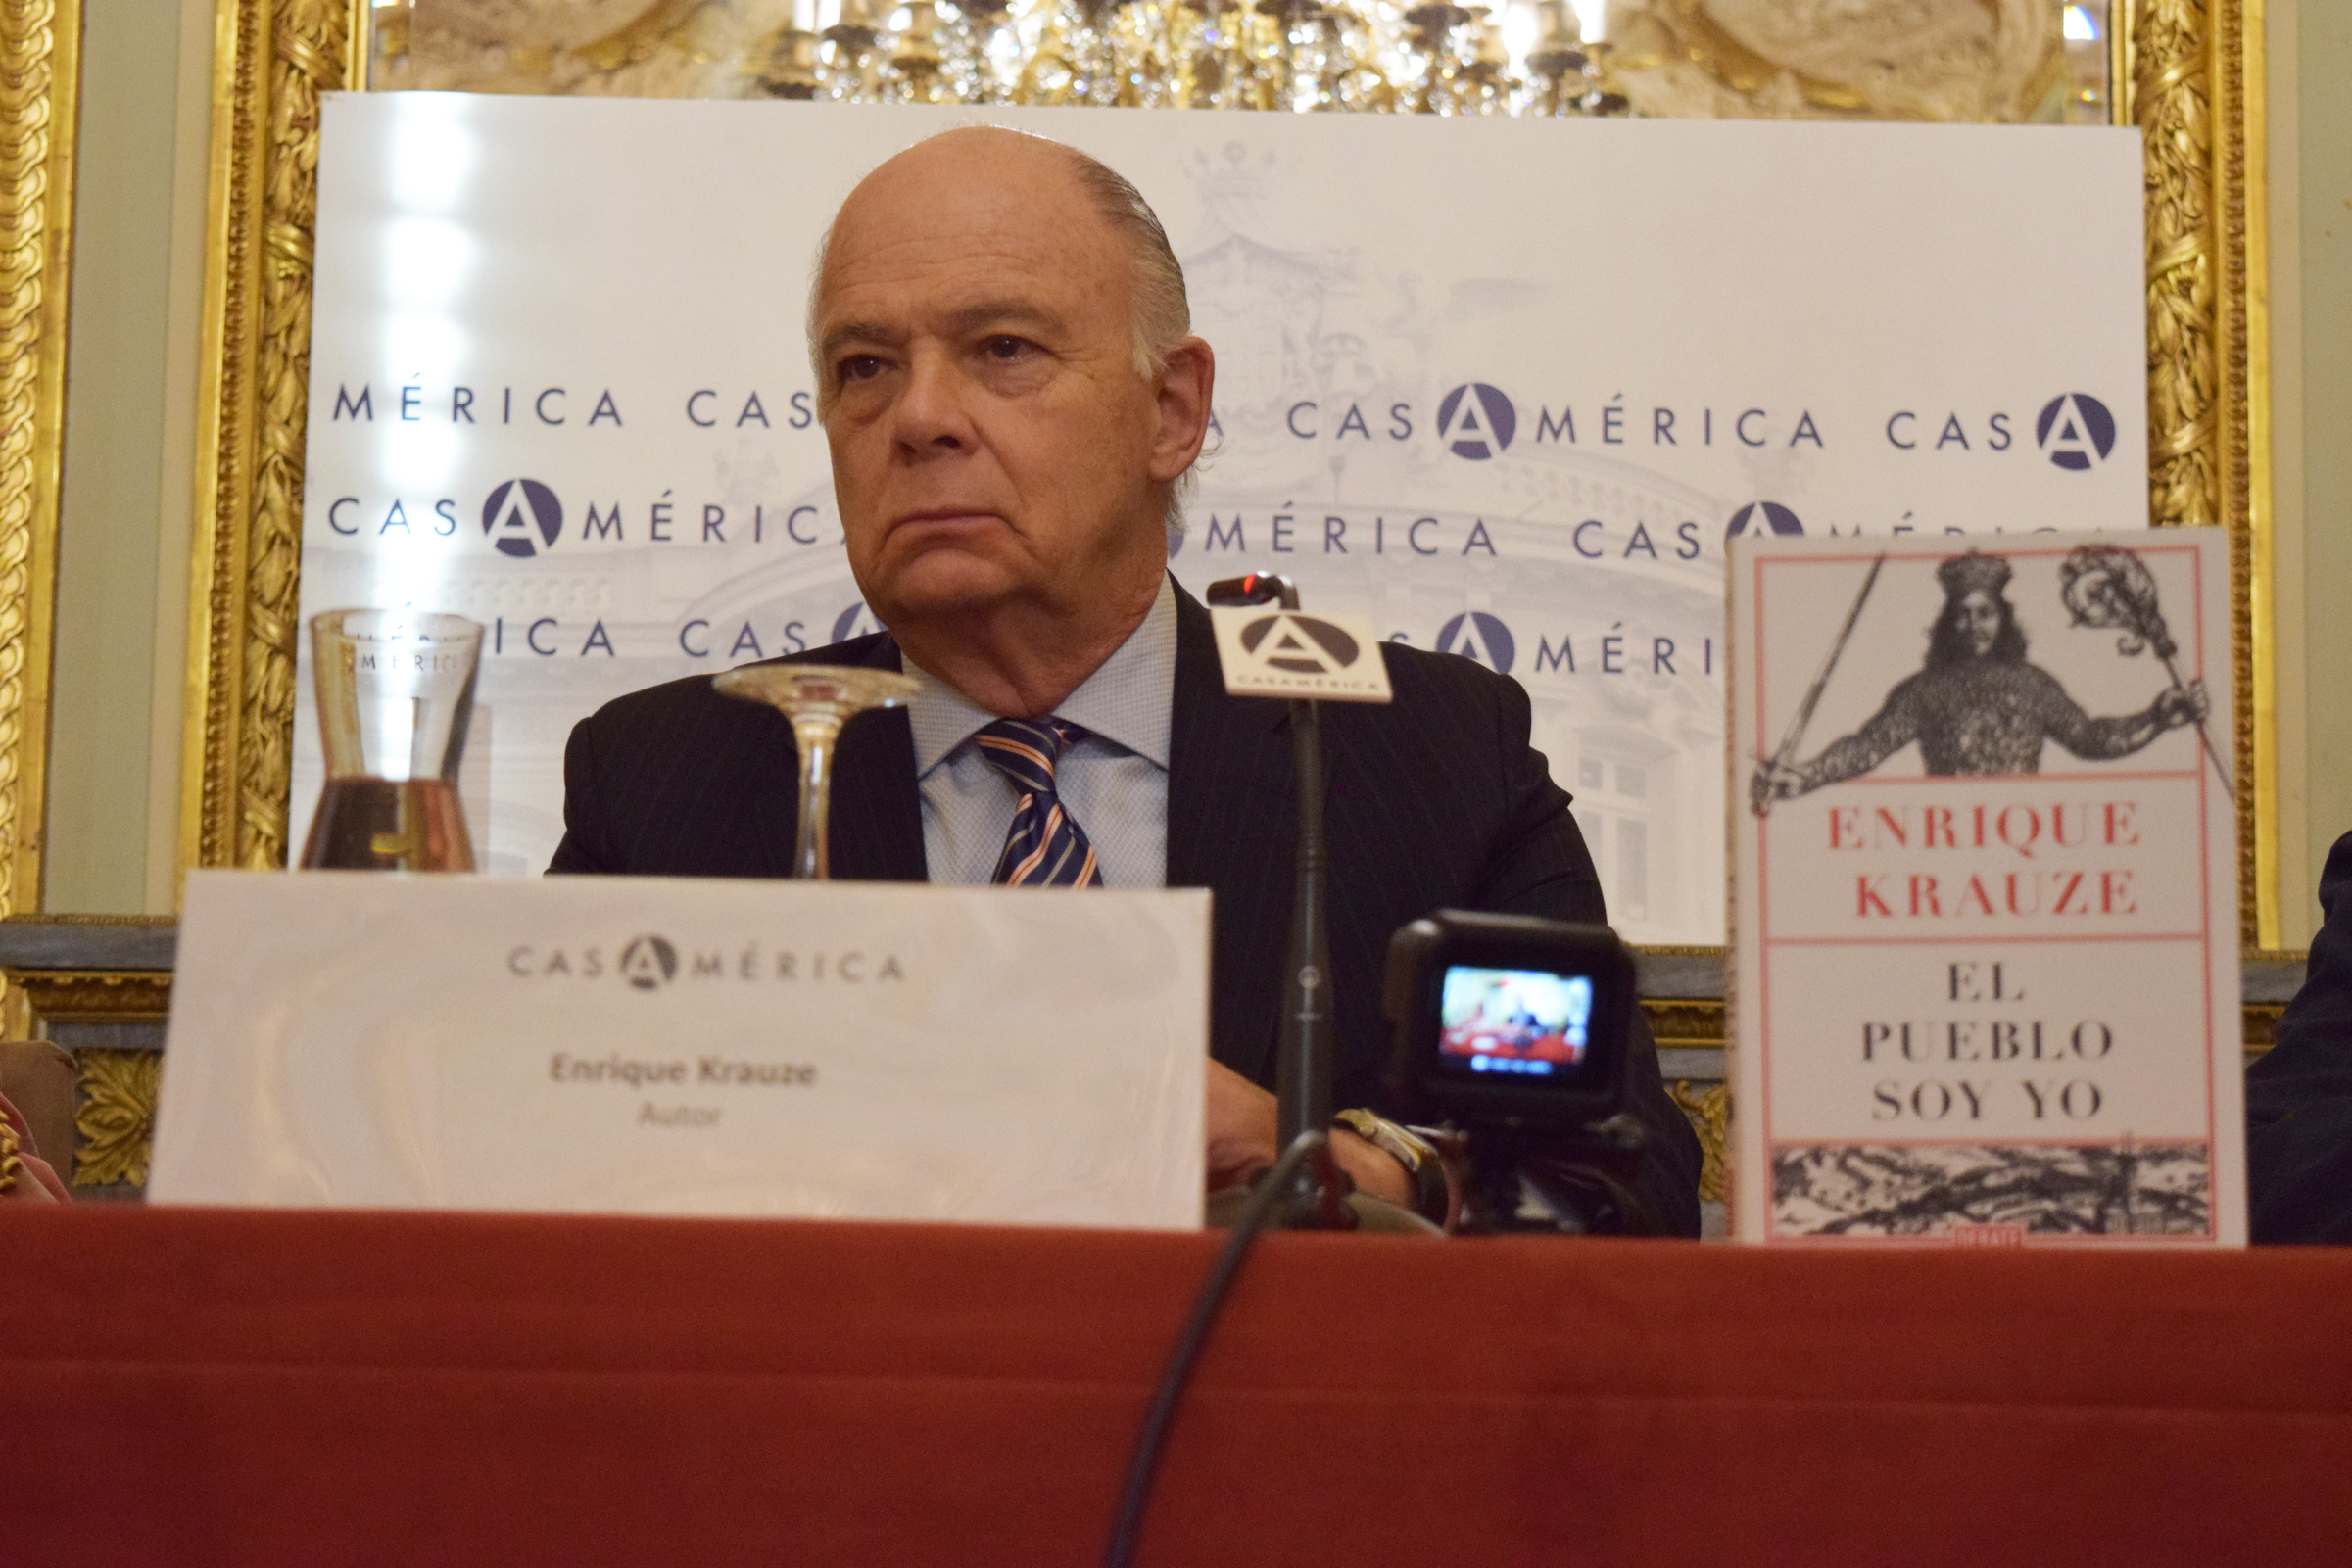 El historiador Enrique Krauze presentó en la Casa de América de Madrid su libro "El pueblo soy yo"